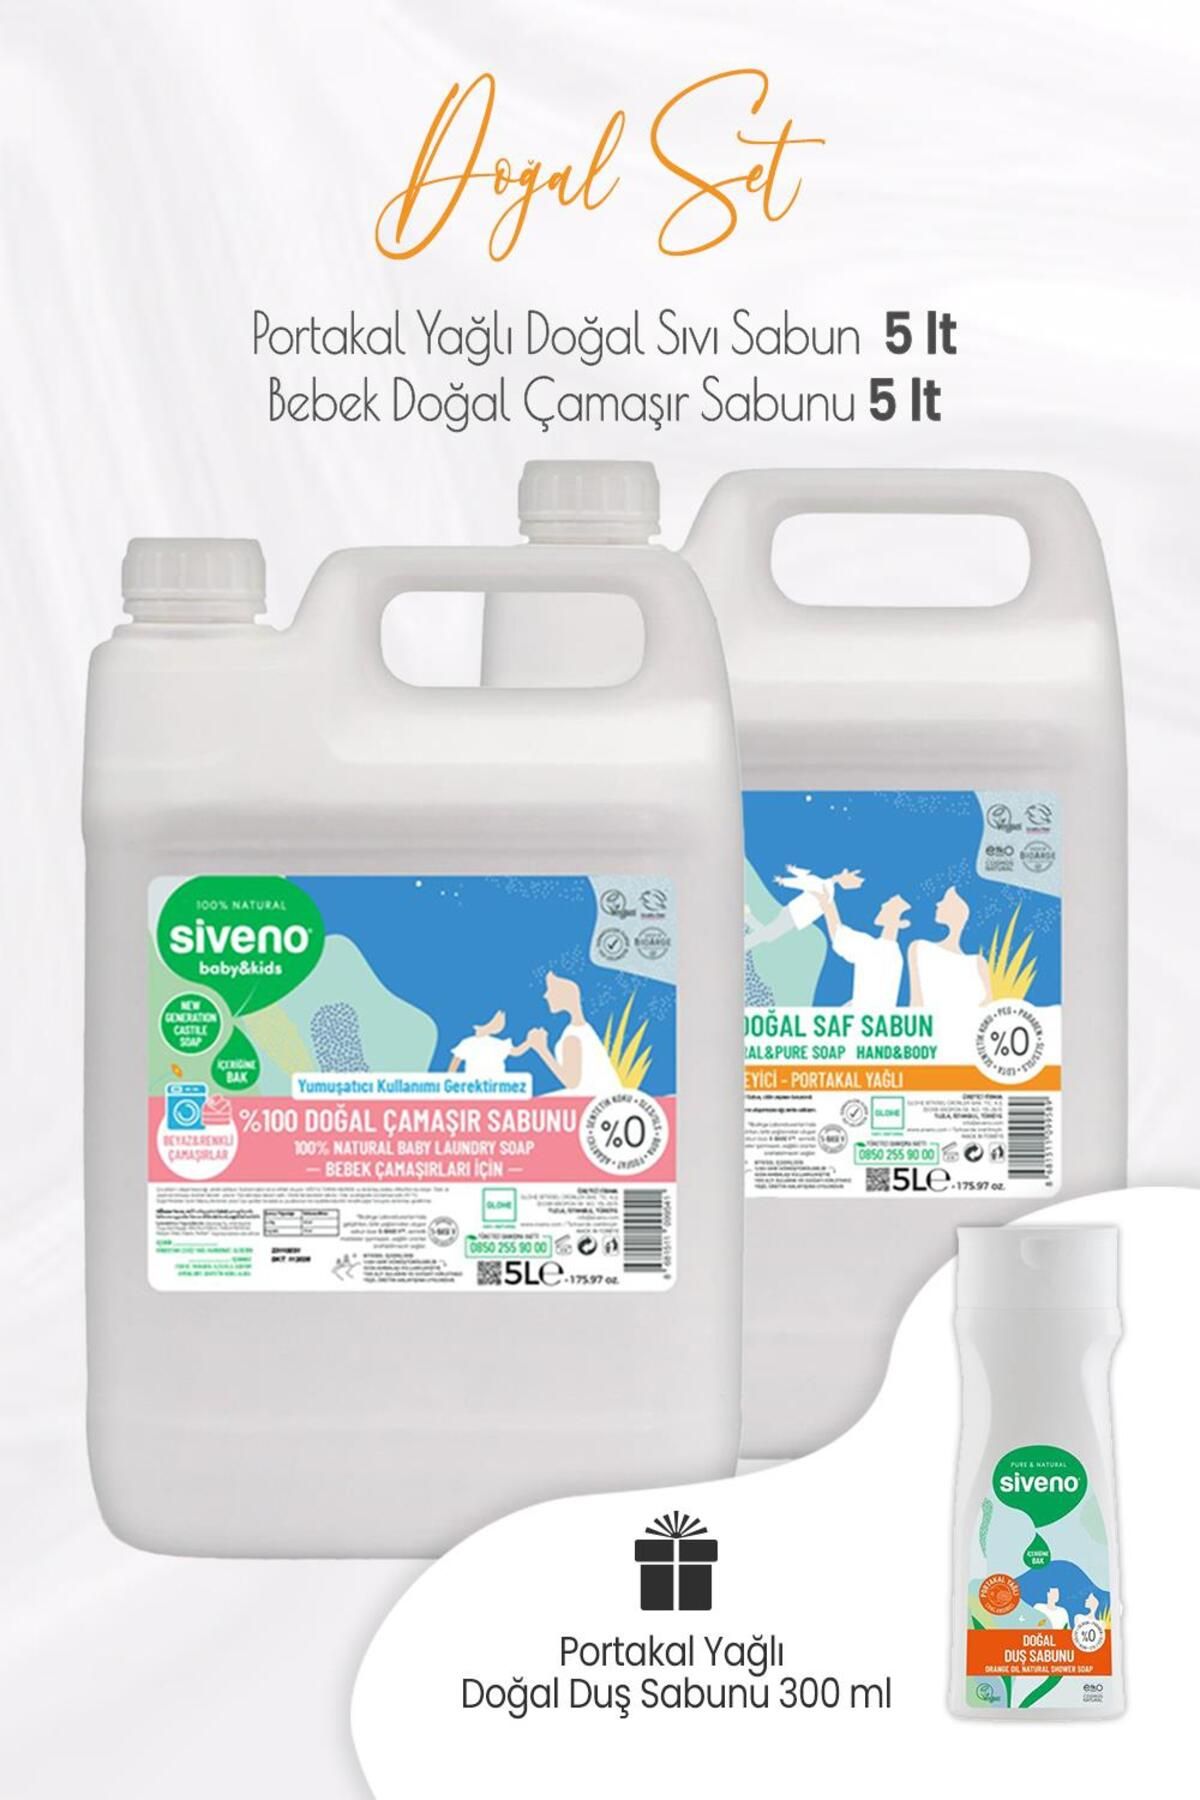 Siveno Baby Doğal Çamaşır Sabunu 5 Lt, Portakal Yağlı Sıvı Sabun 5 Lt Ve Duş Sabunu 300 ml